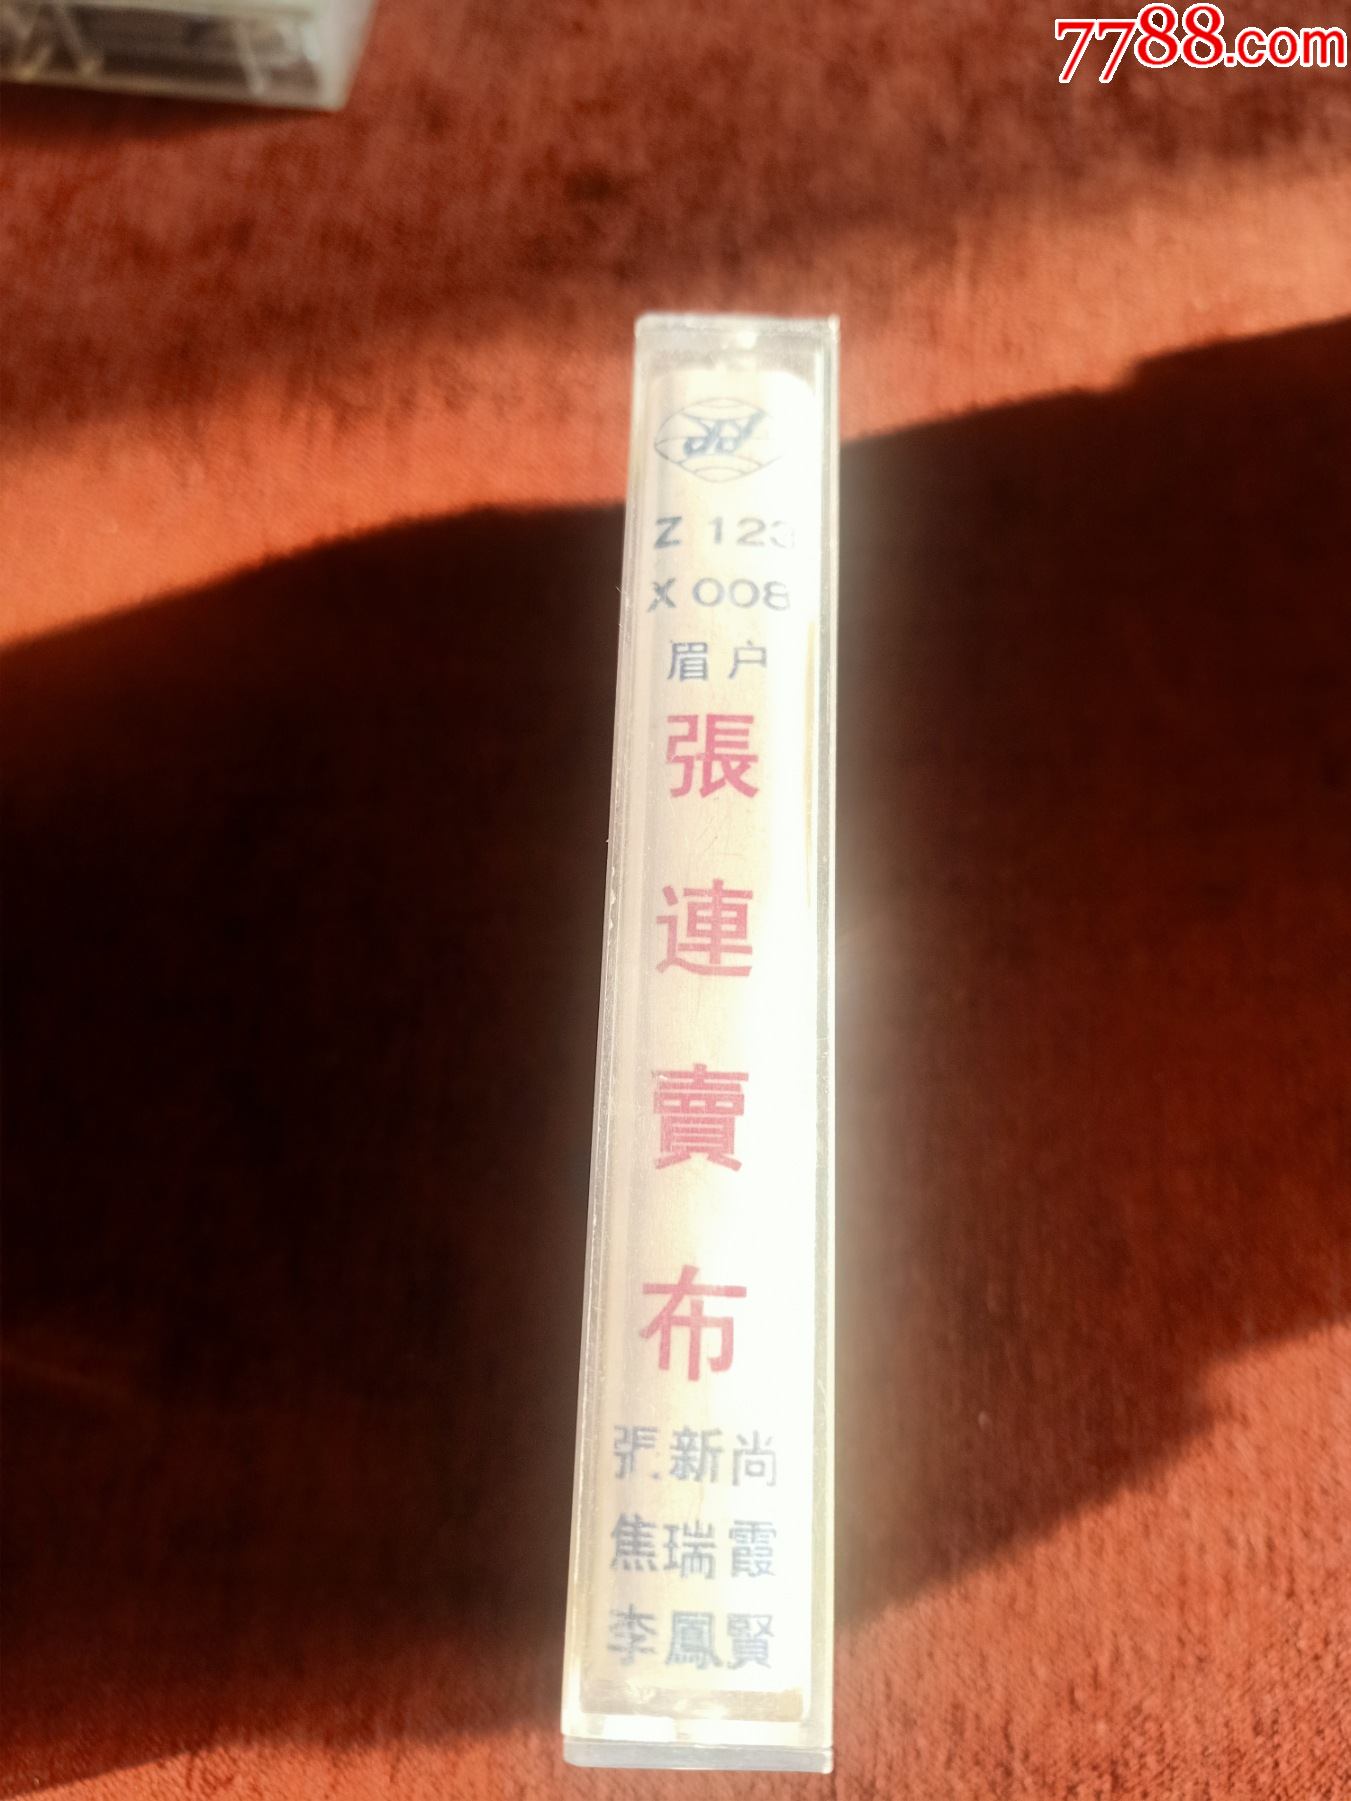 眉户,《张连卖布》磁带,李凤贤,张新尚,焦瑞侠演唱,中国乐友音像出版